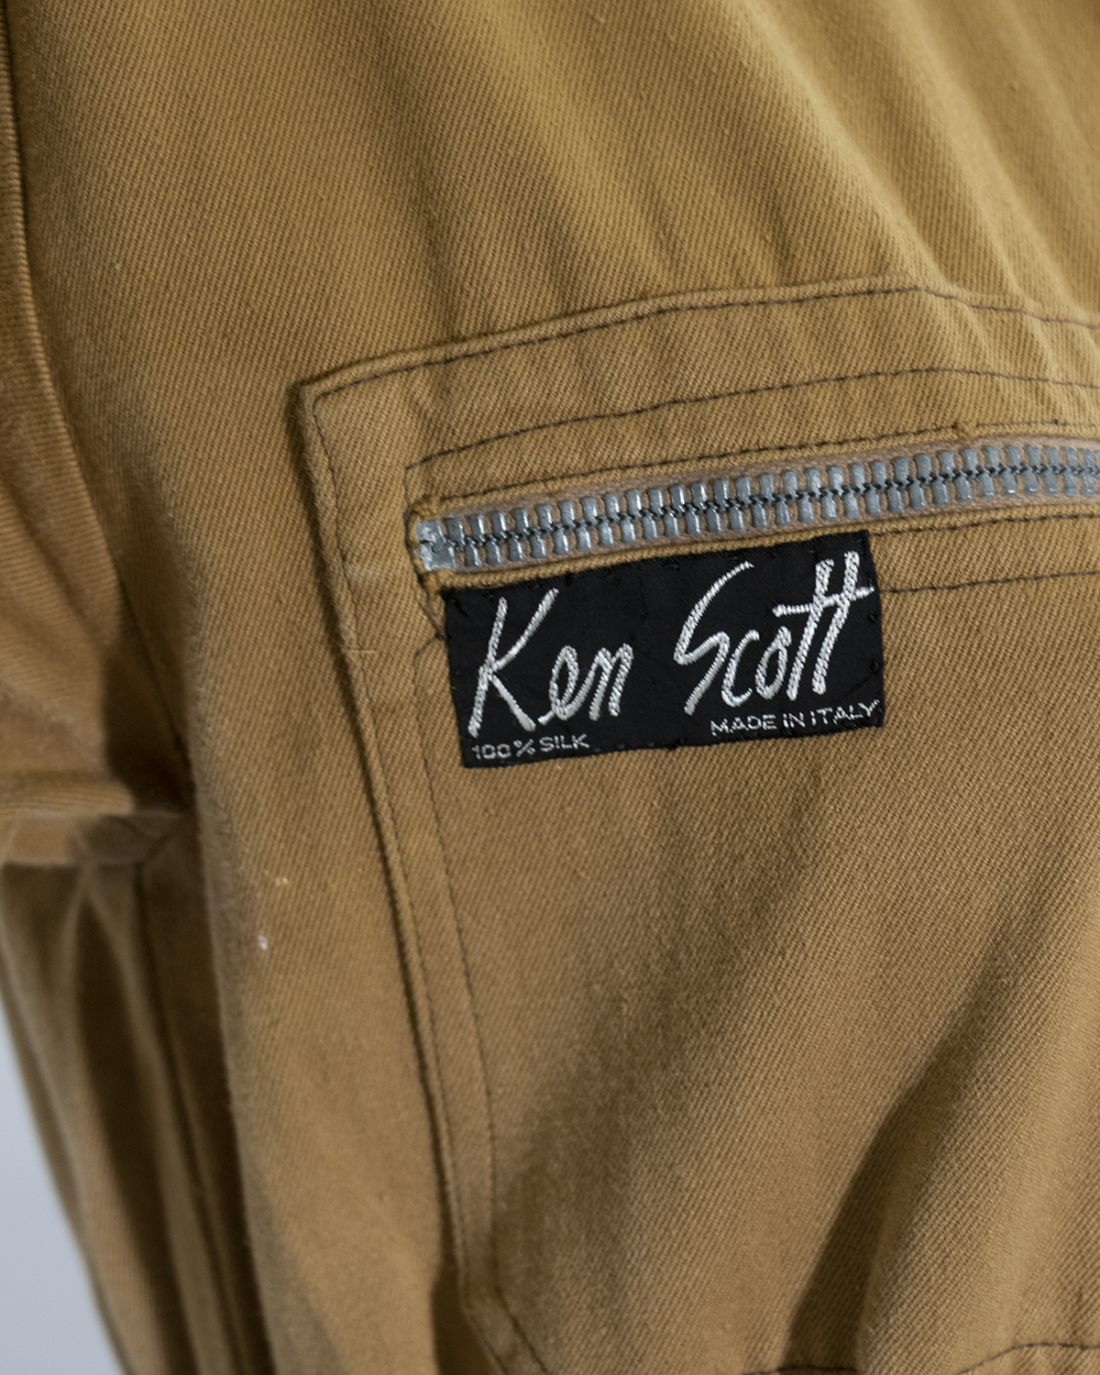 Ken Scott - Workwear Jumpsuit from 1970s